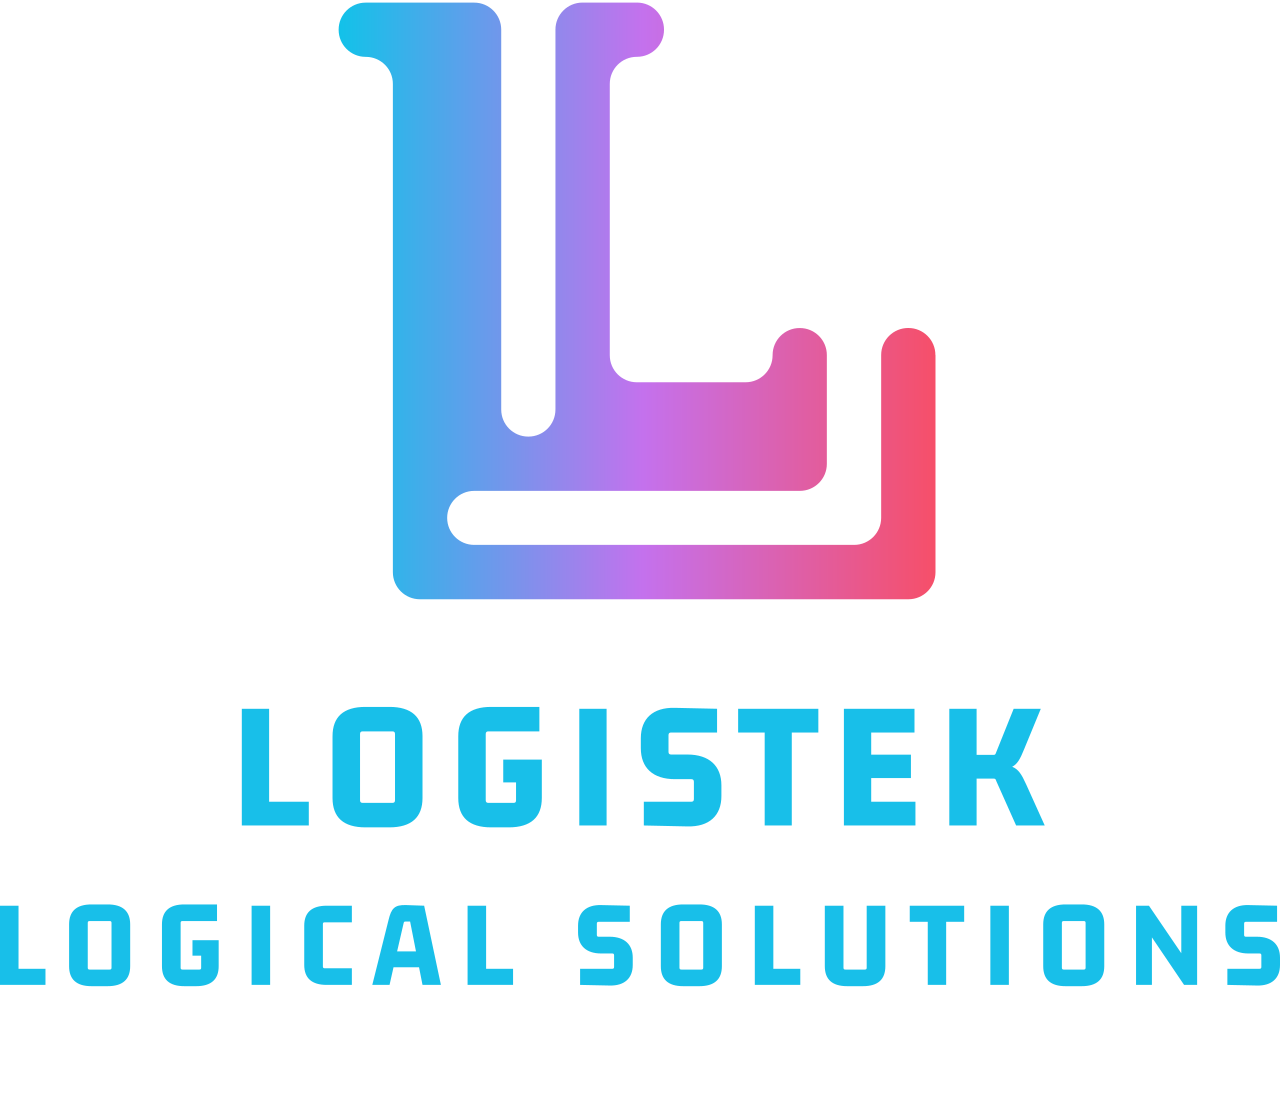 LOGISTEK's logo